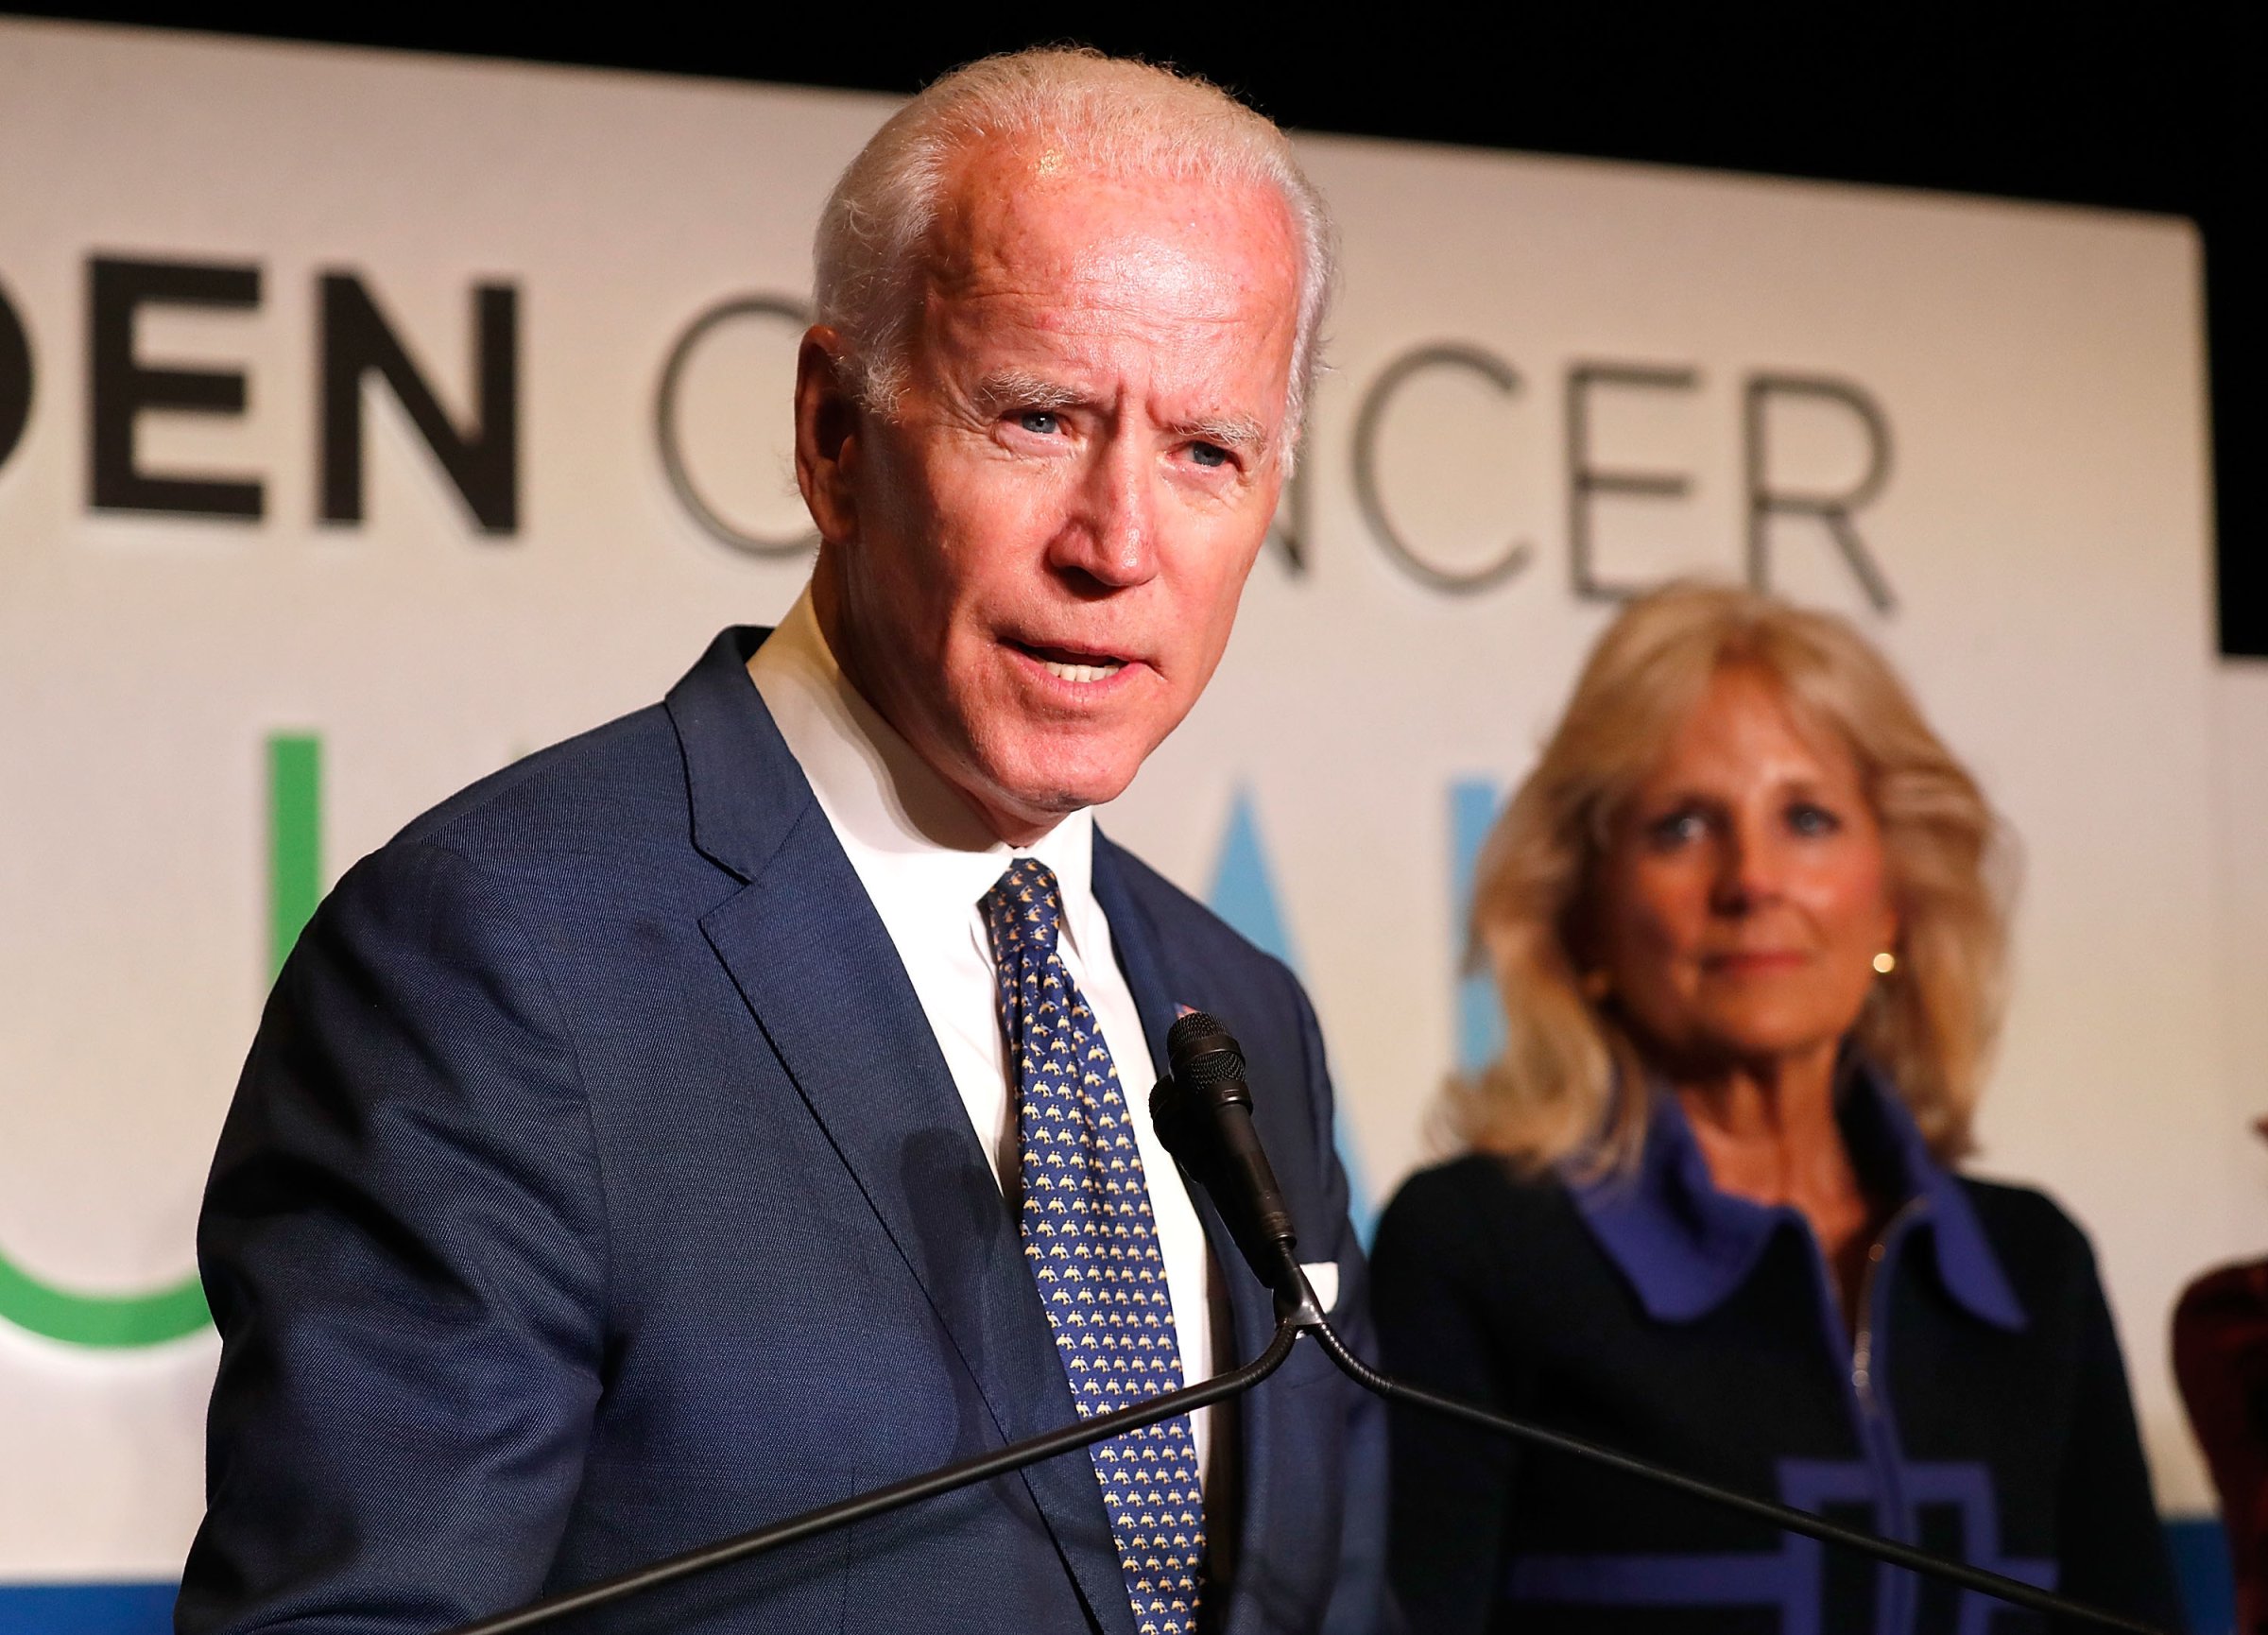 Biden Cancer Summit Welcome Reception